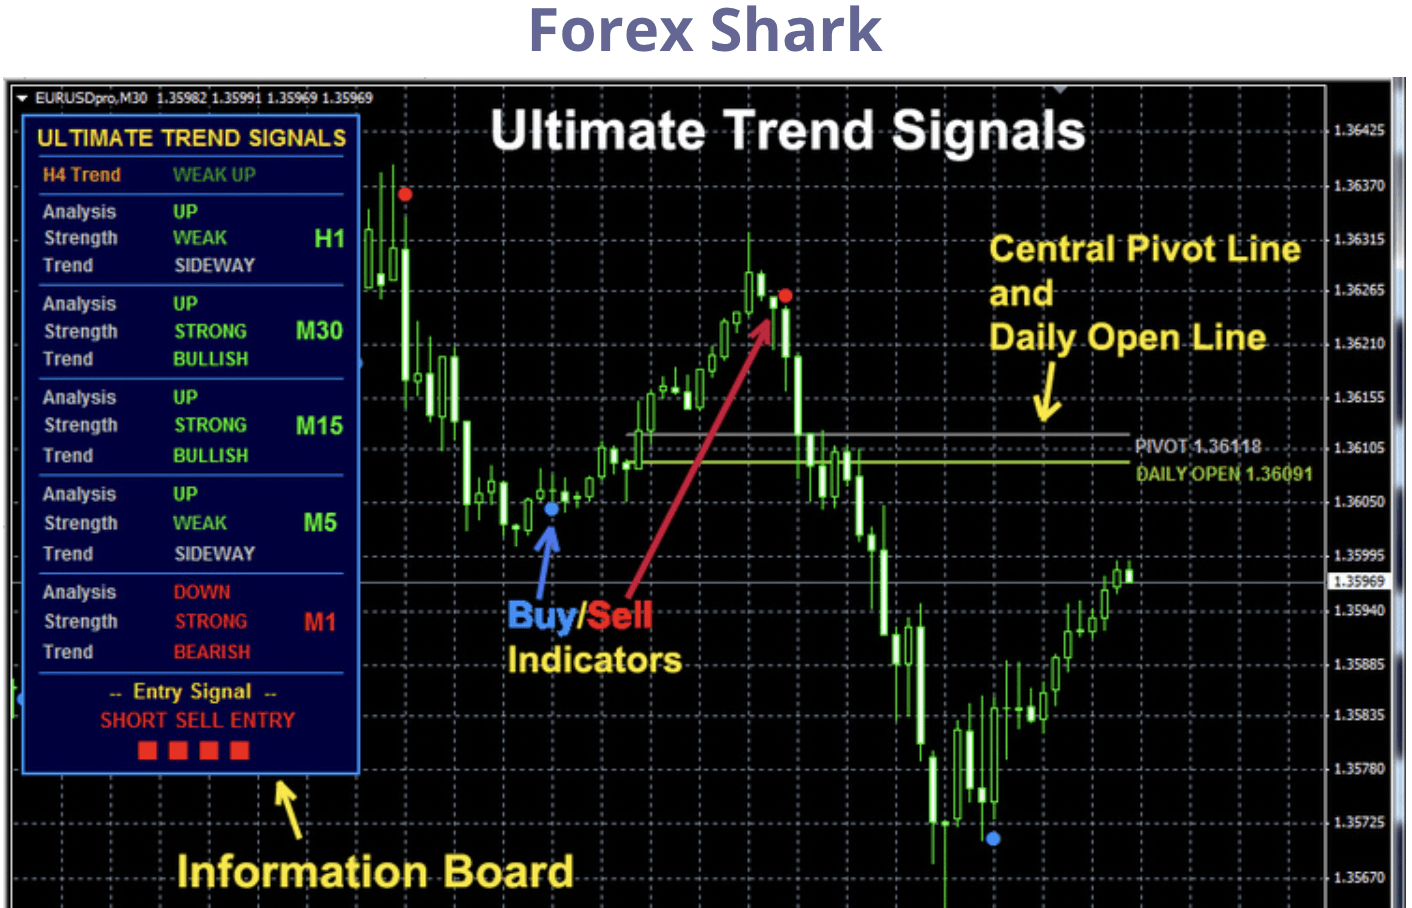 Forex Shark Ultimate Trend Signals v2 Download